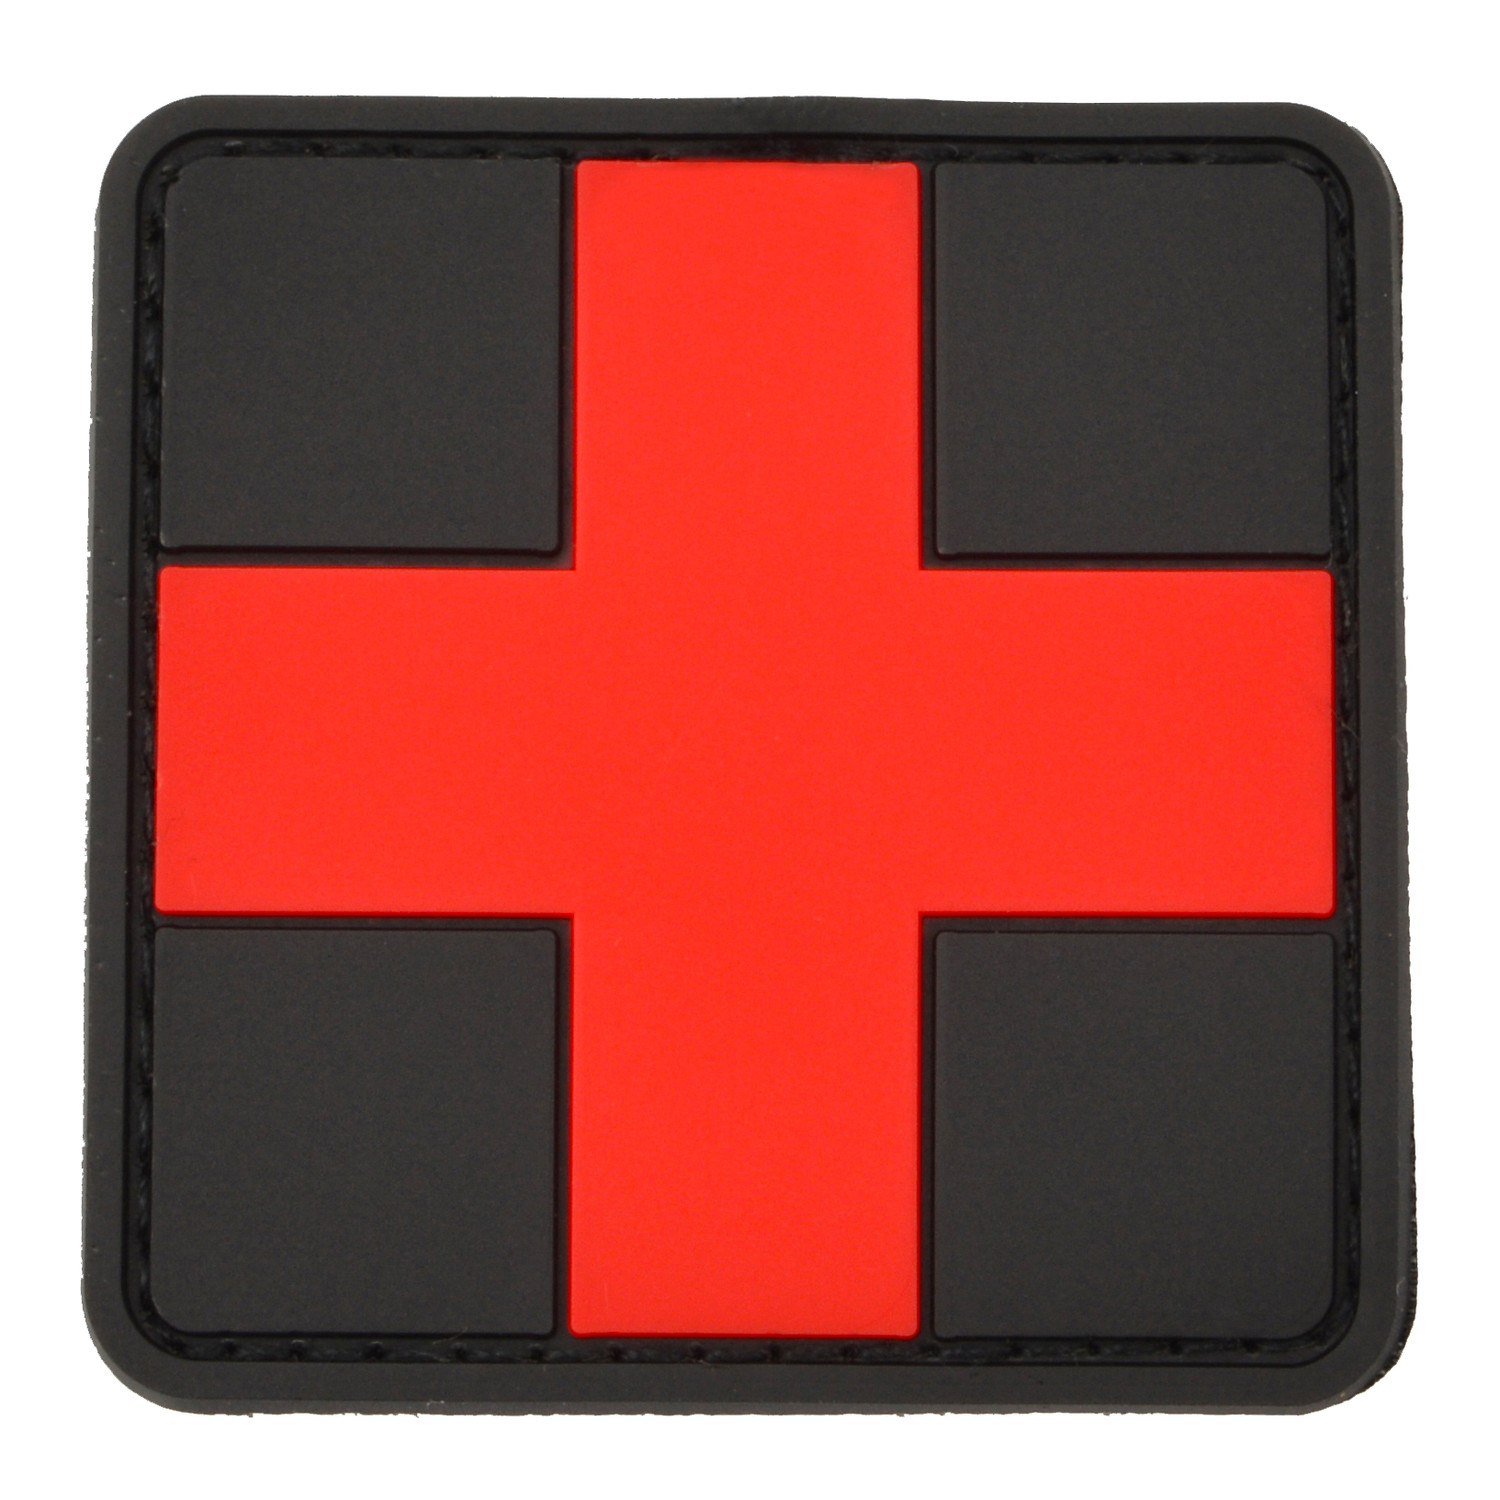 Klett-Abzeichen Erste Hilfe aus PVC, 5 x 5 cm in Schwarz / Rot